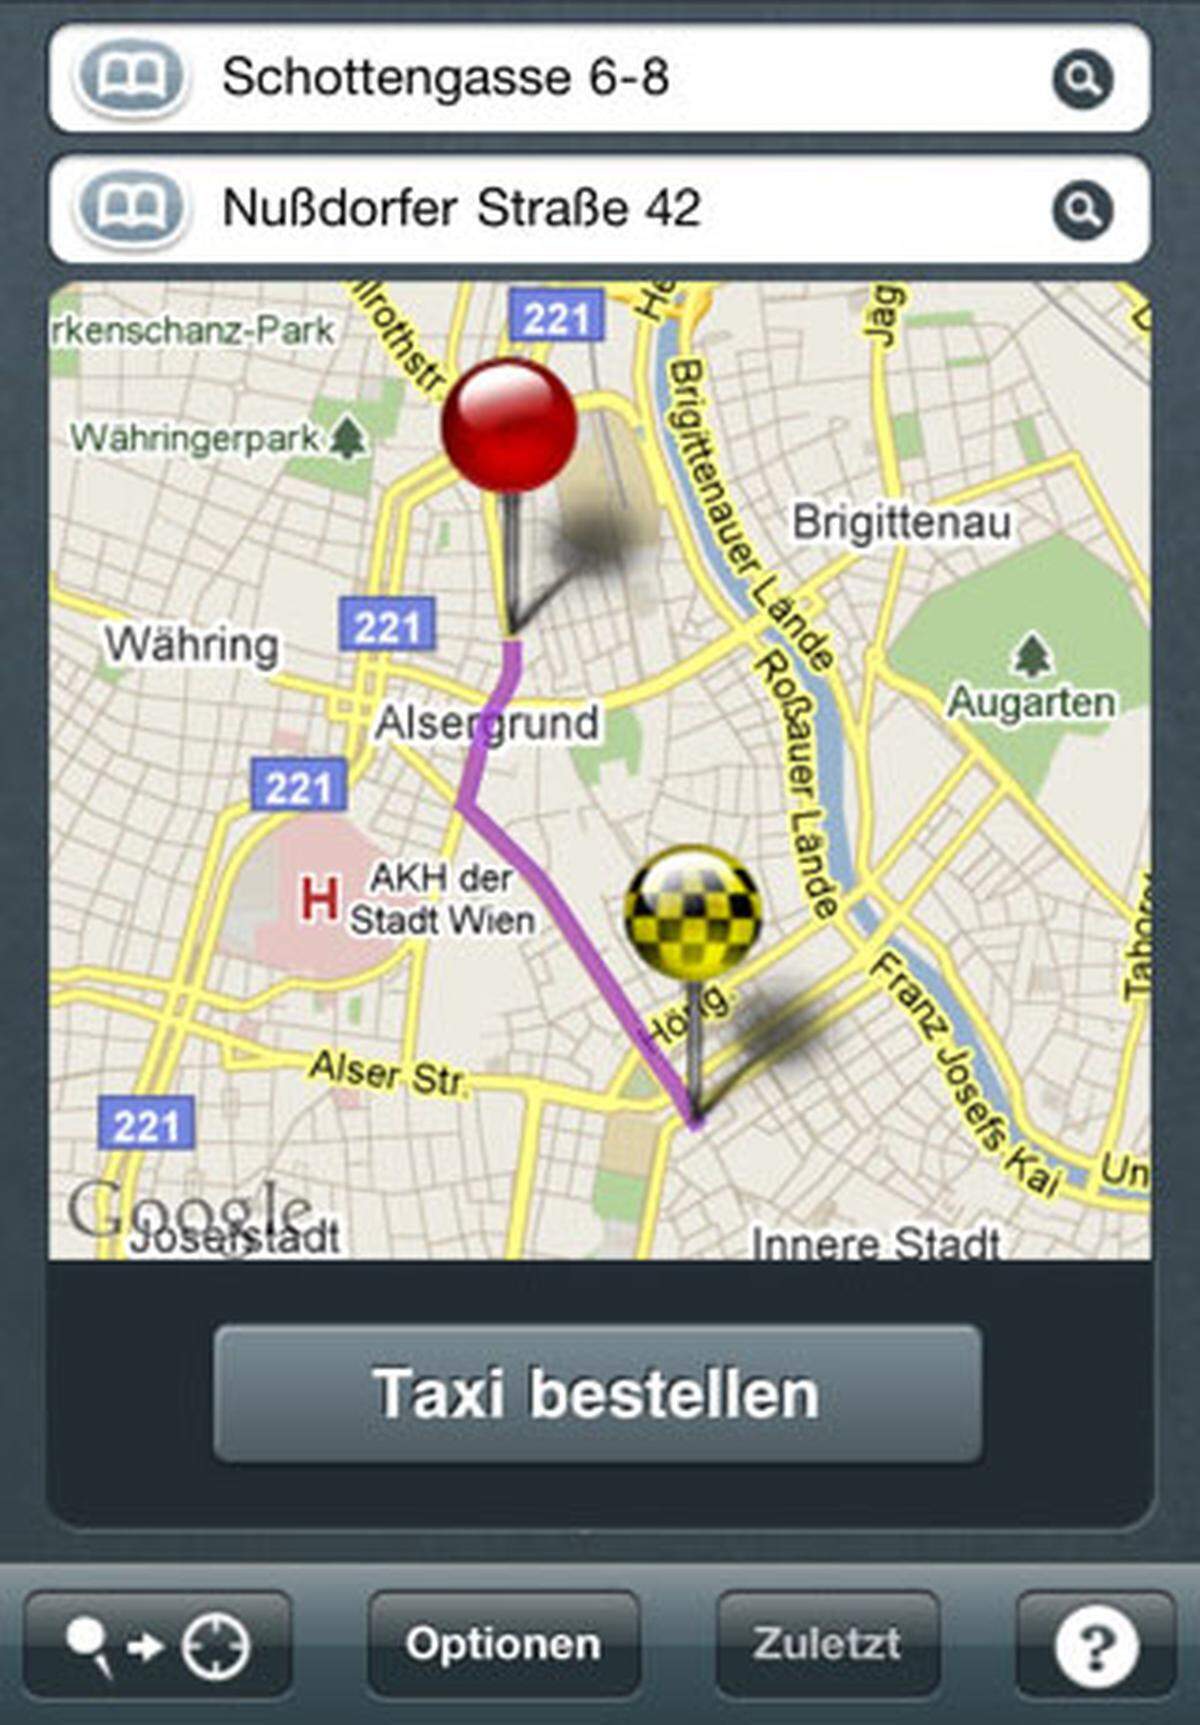 Taxi-Apps gibt es von 40100, 31300 und dem Linzer Unternehmen 2244 - alle bieten ungefähr dasselbe. Ohne einen Anruf tätigen zu müssen kann zum aktuellen Stanort ein Taxi geordert werden. Am Display wird angezeigt, wielange der Kunde warten muss, wie die ideale Route zum gewünschten Ziel aussieht und wie hoch die zu erwartenden Kosten sind. Der Taxifahrer kann anschließend bewertet werden.